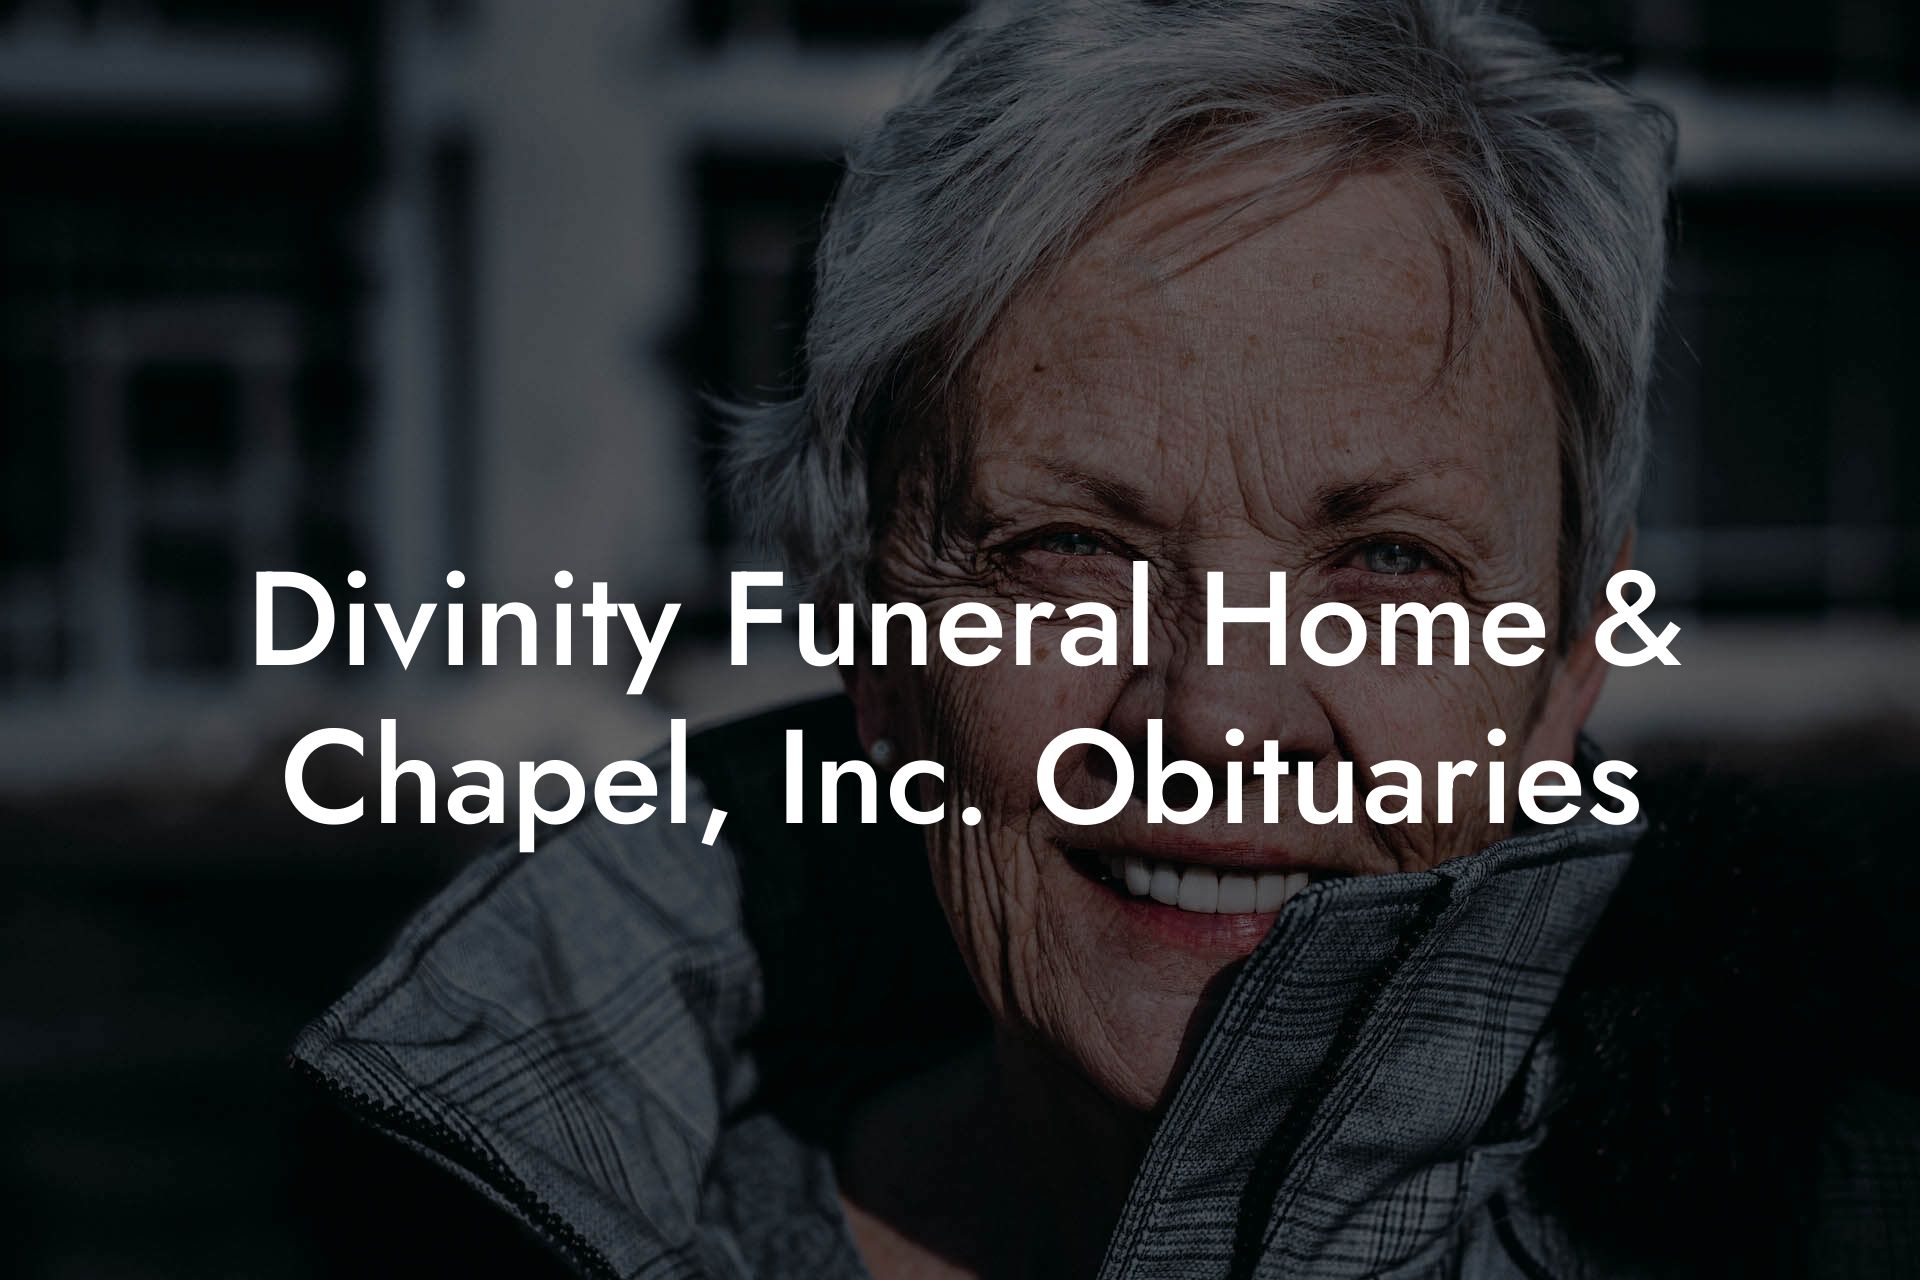 Divinity Funeral Home & Chapel, Inc. Obituaries